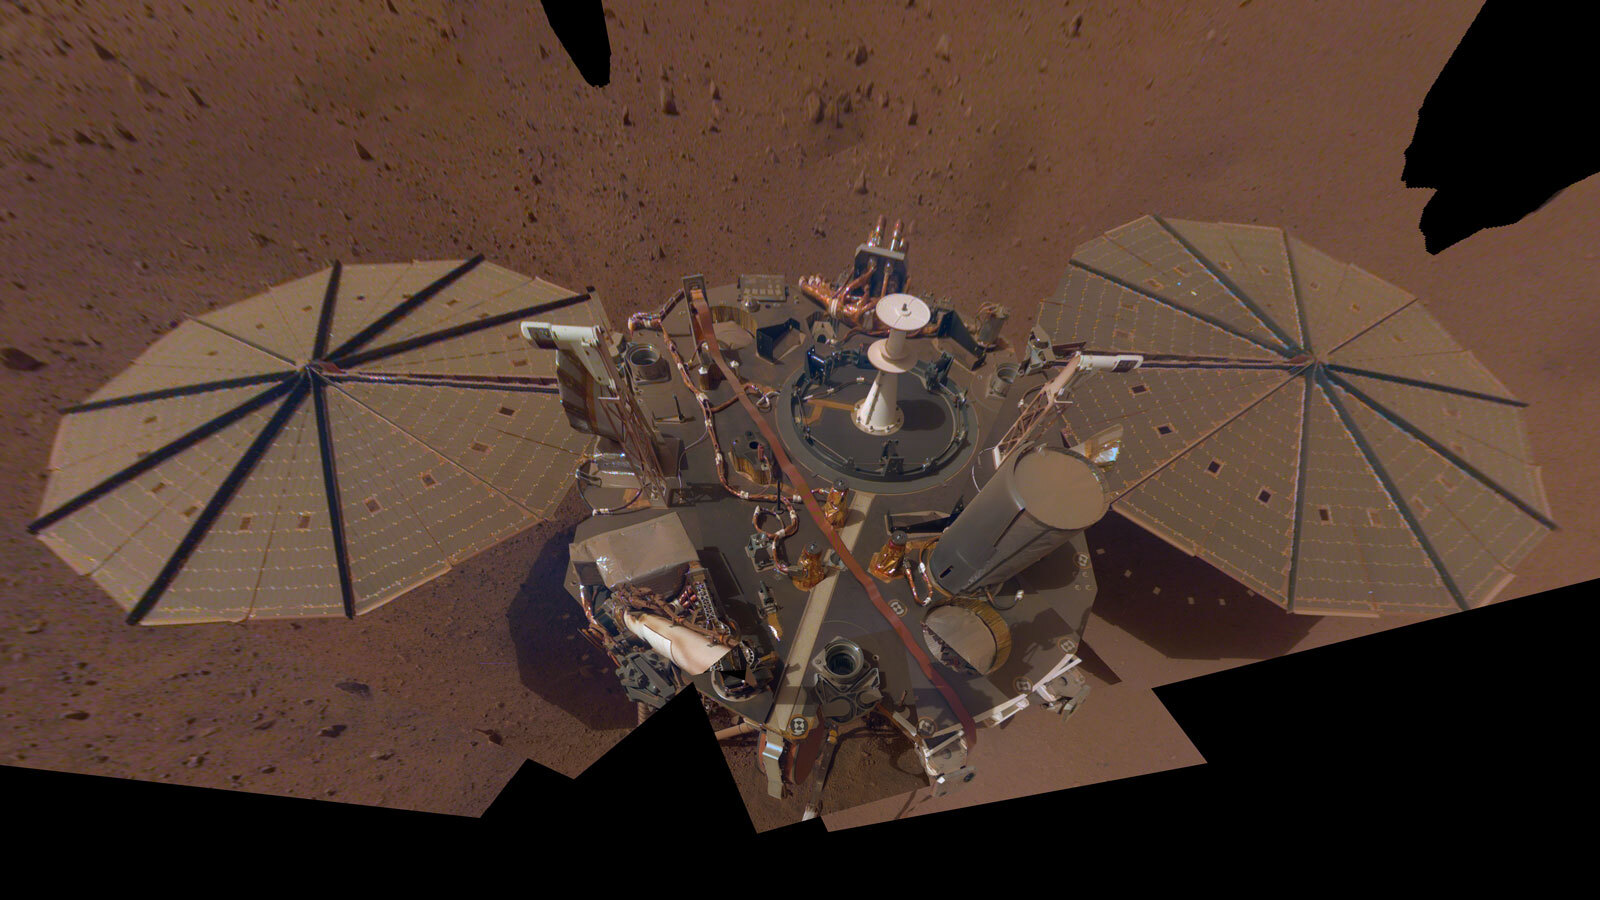 Аппарат NASA на Марсе перешел в режим экономии энергии из-за пылевой бури